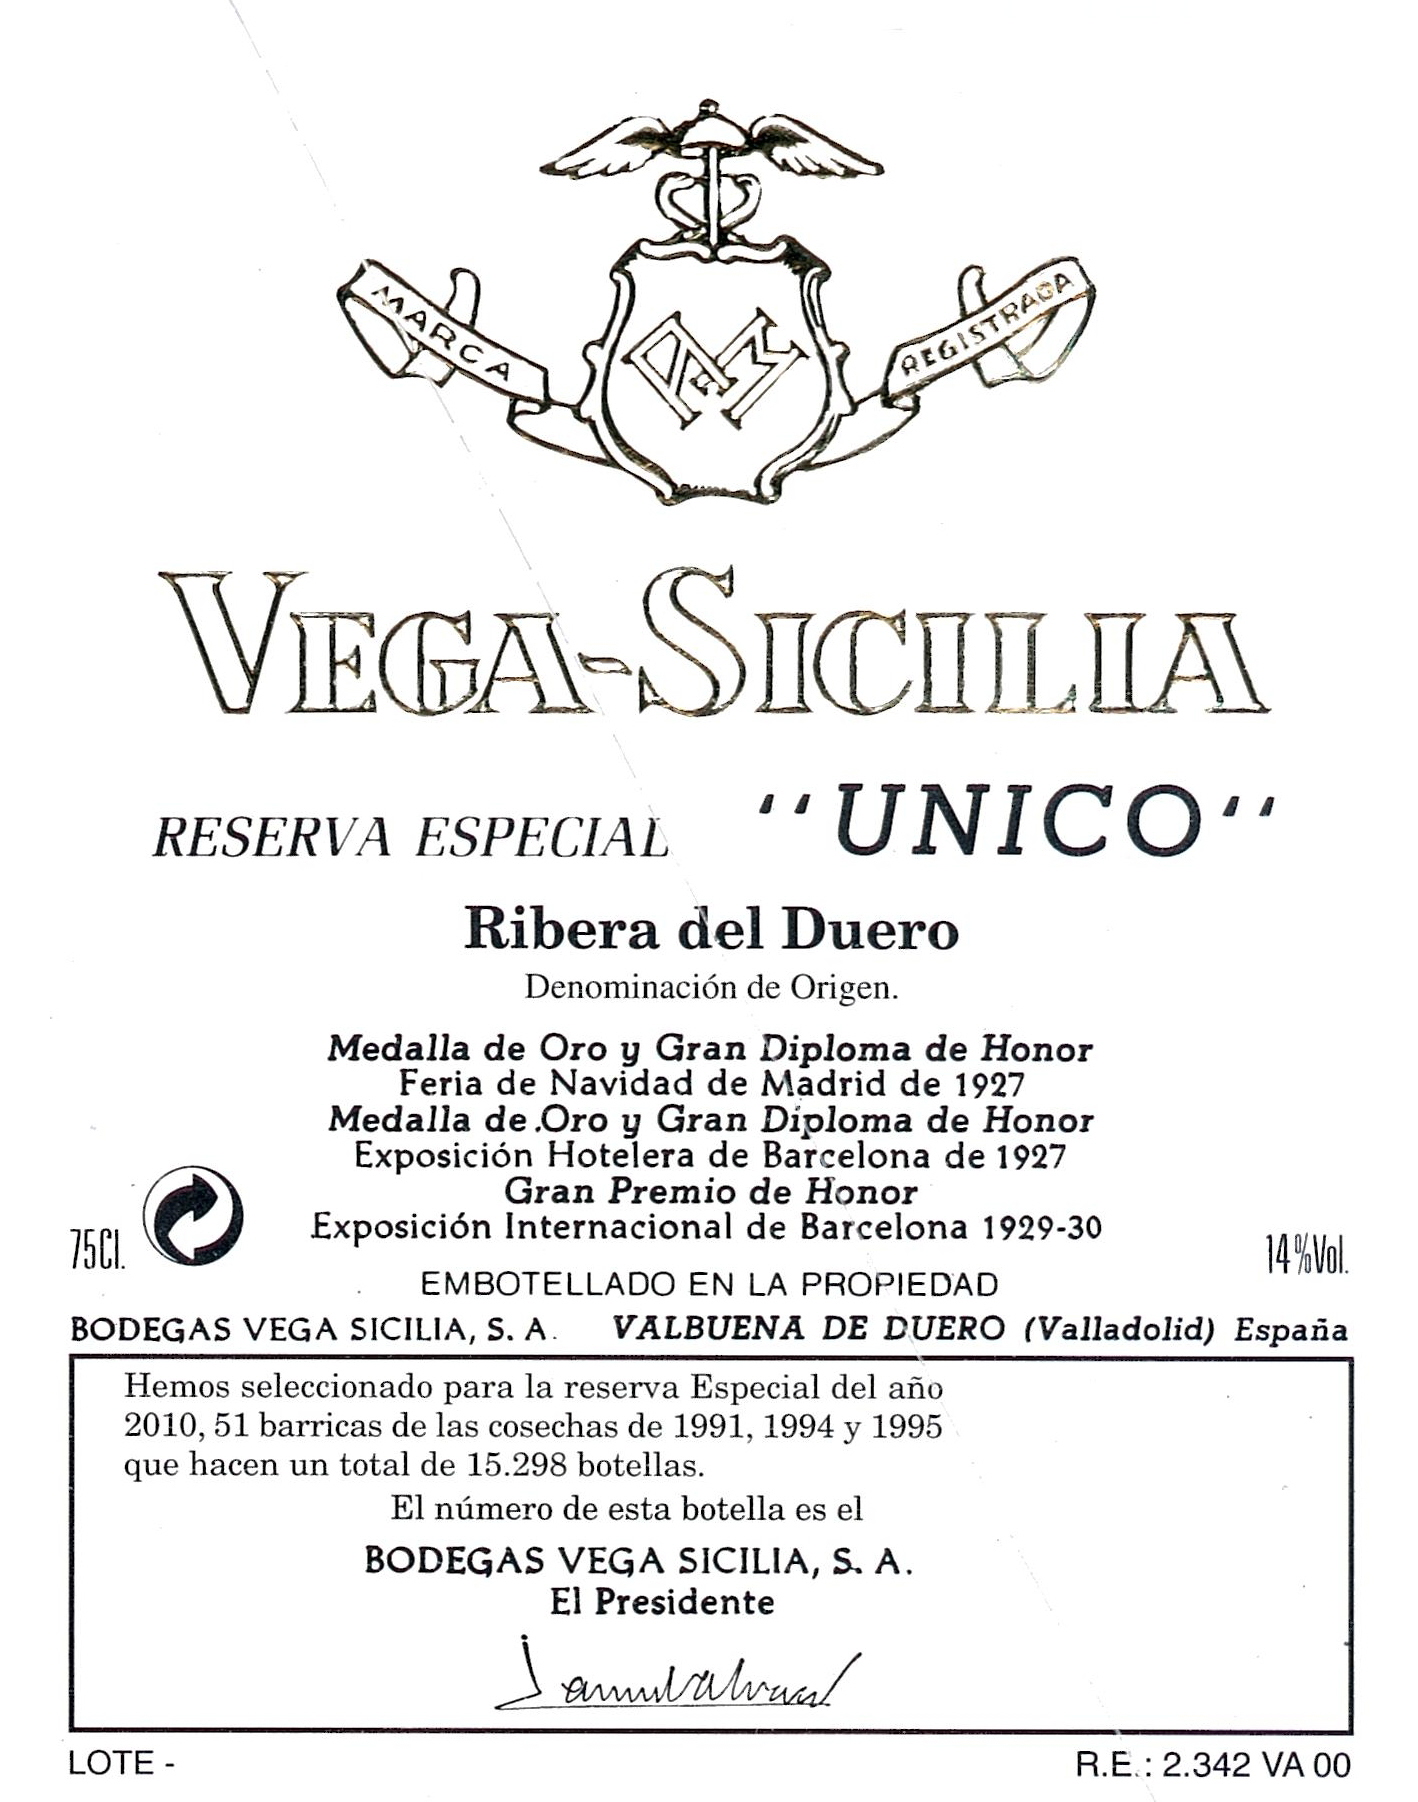 1972 Vega Sicilia Unico Ribera Del Duero Spain - click image for full description